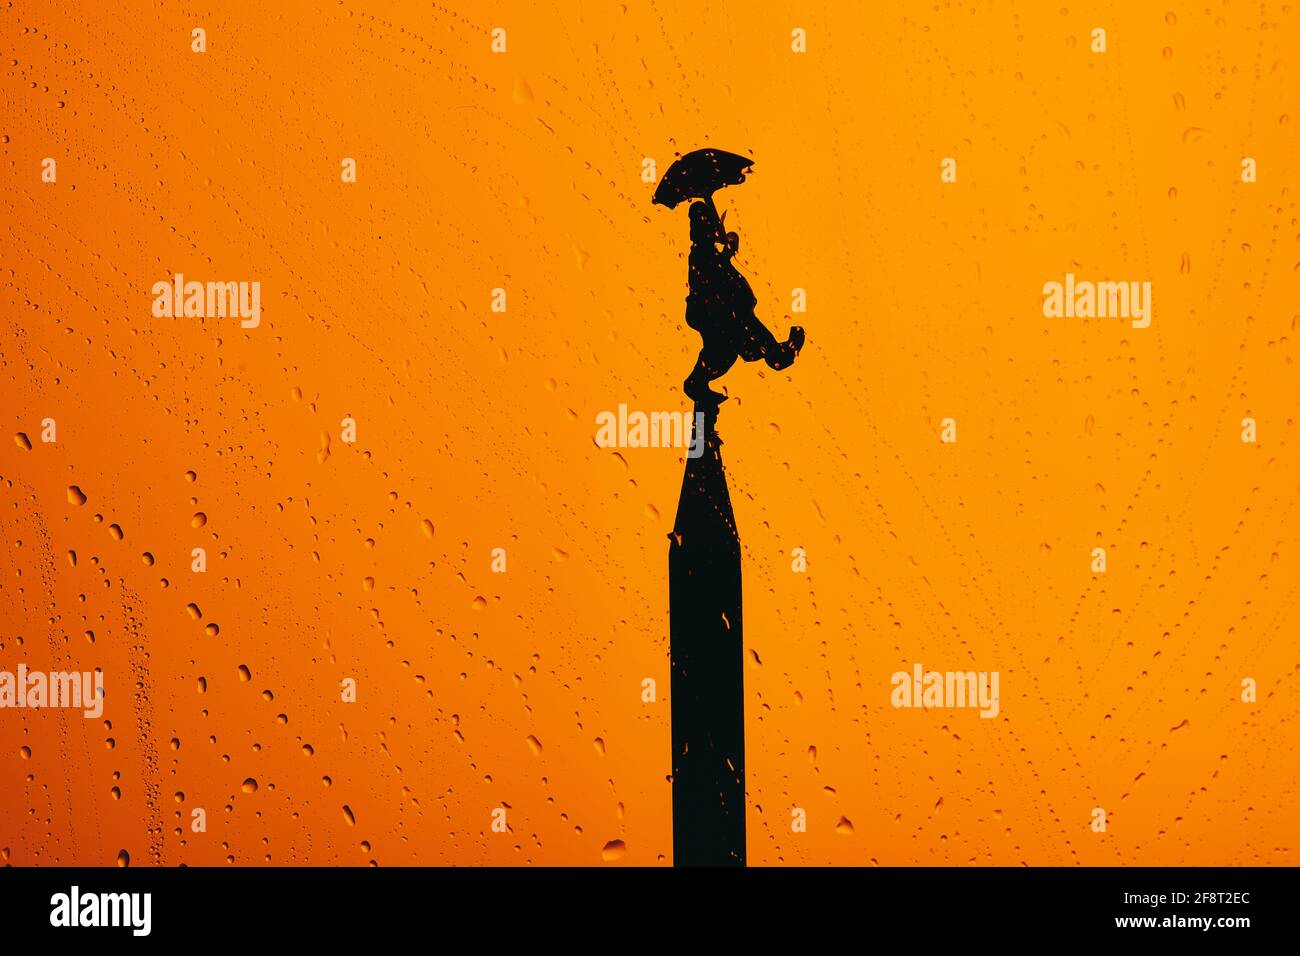 Le jour de l'imbécile d'avril avec une silhouette de clown haut d'une tour sur fond orange avec des gouttes Banque D'Images